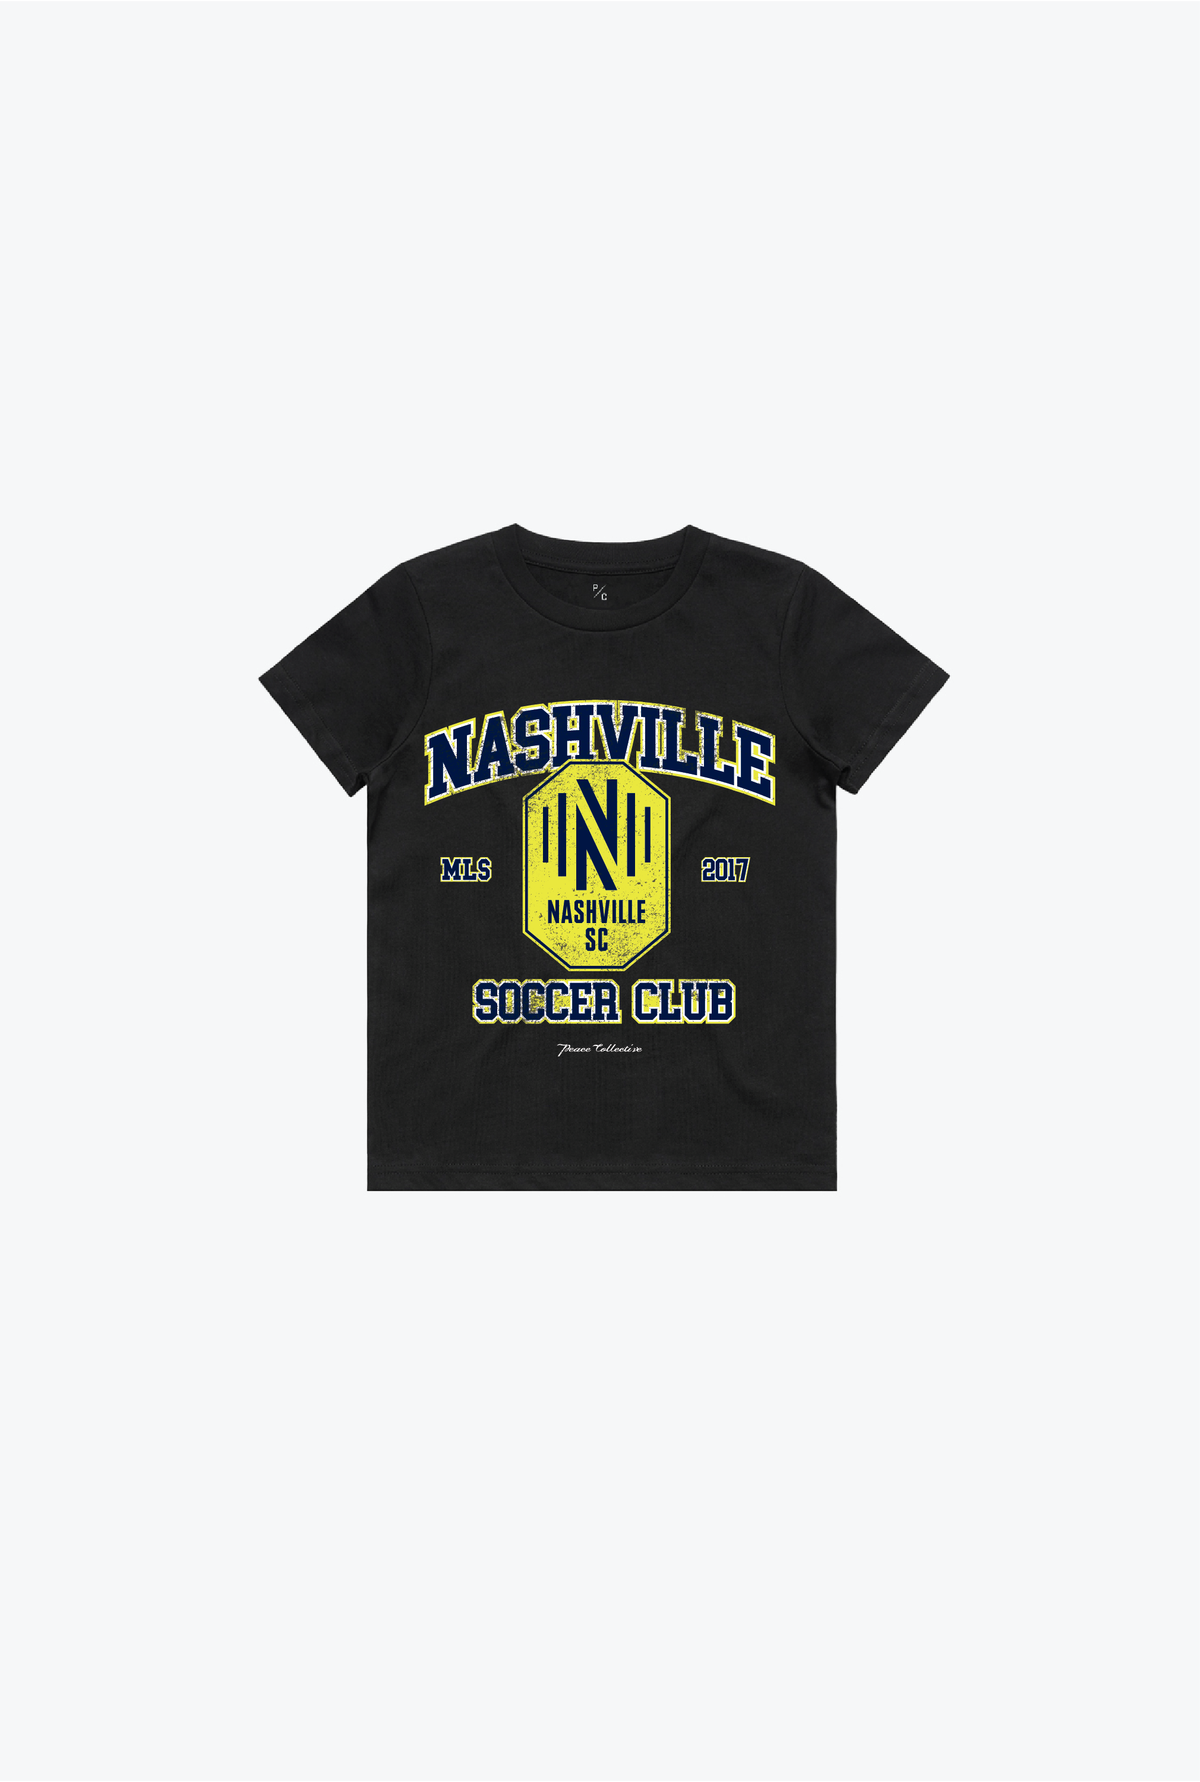 Nashville SC Vintage Washed Kids T-Shirt - Black